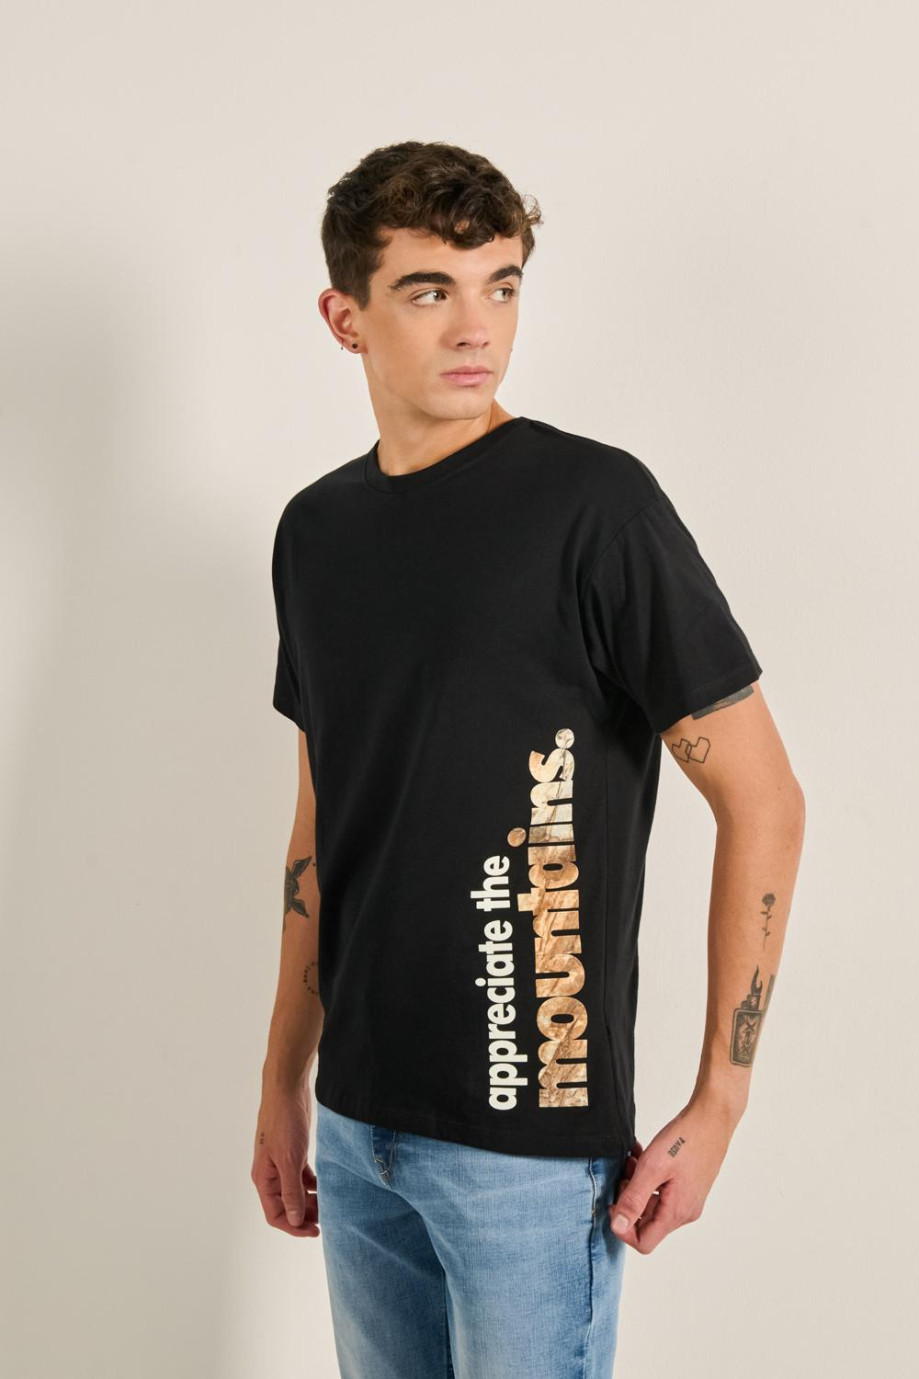 Camiseta estampada en algodón unicolor con manga corta